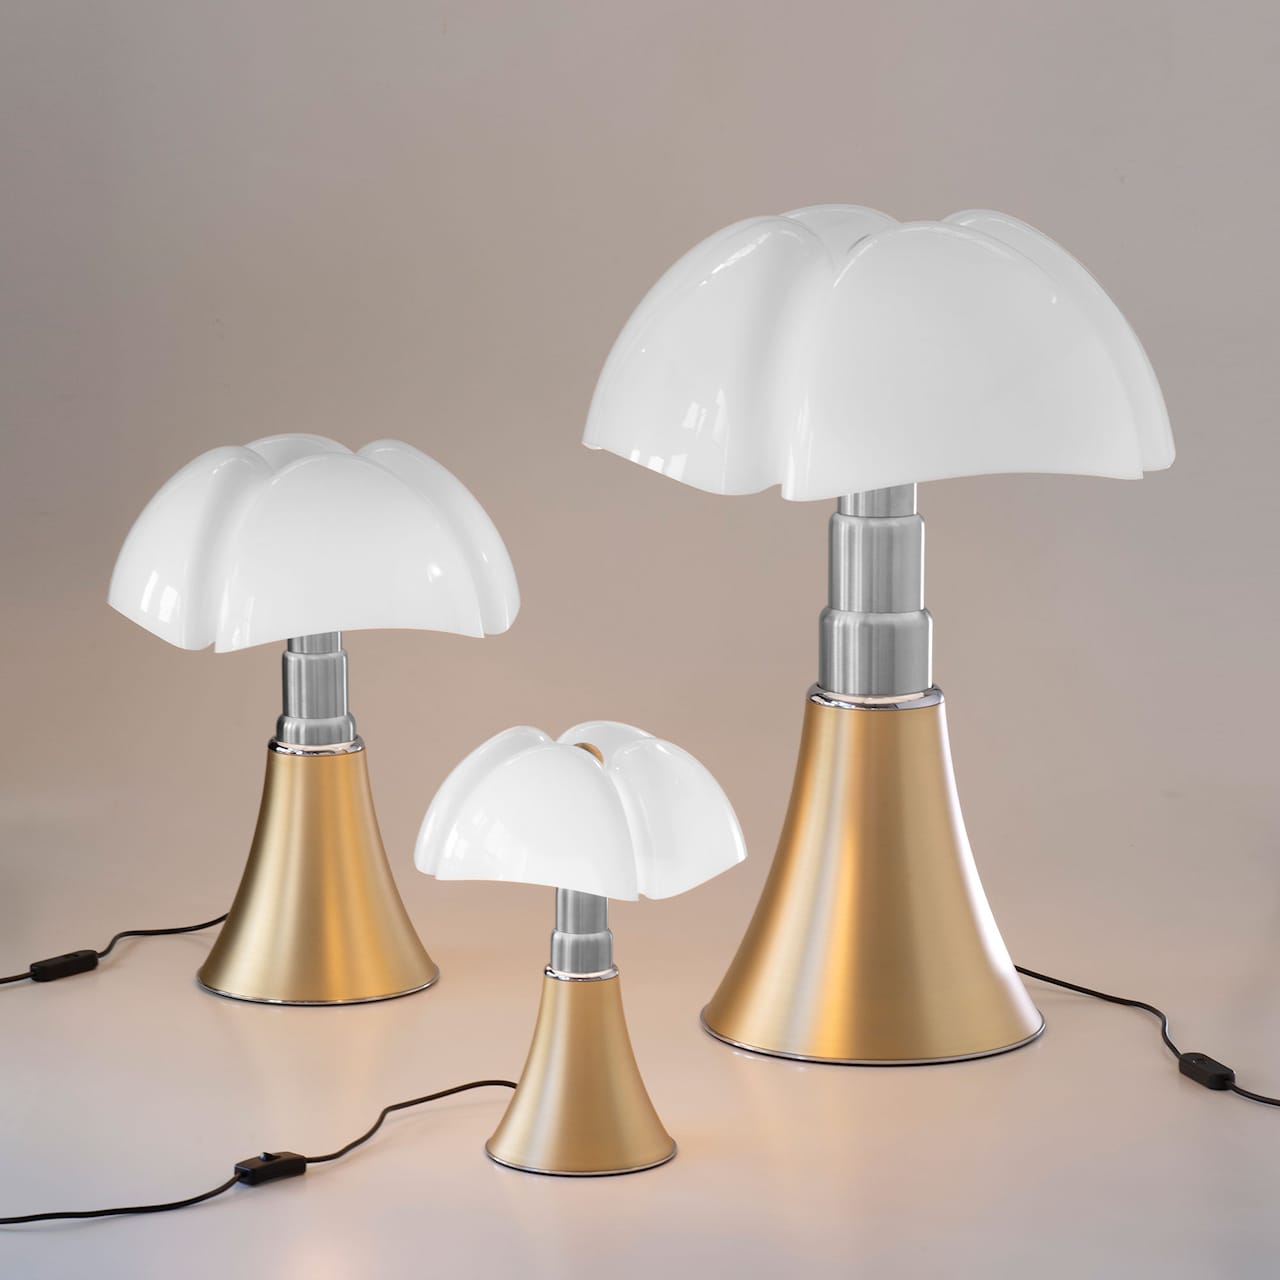 Pipistrello Table Lamp Brass - Non-dimmable